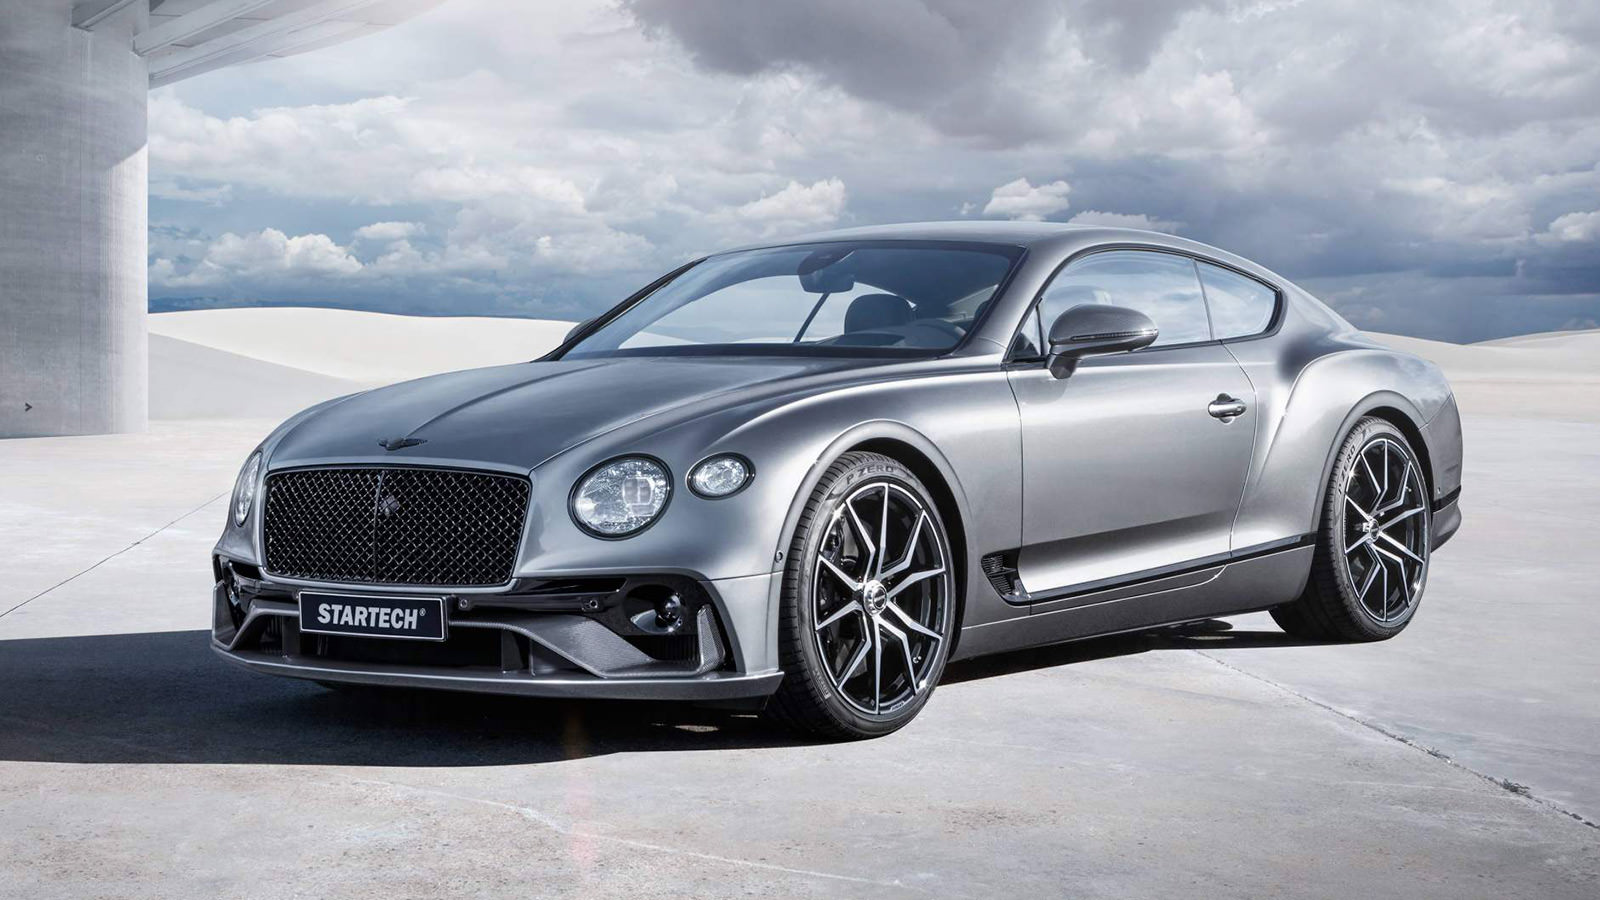 Startech-Bentley-Continental-GT-main.jpg